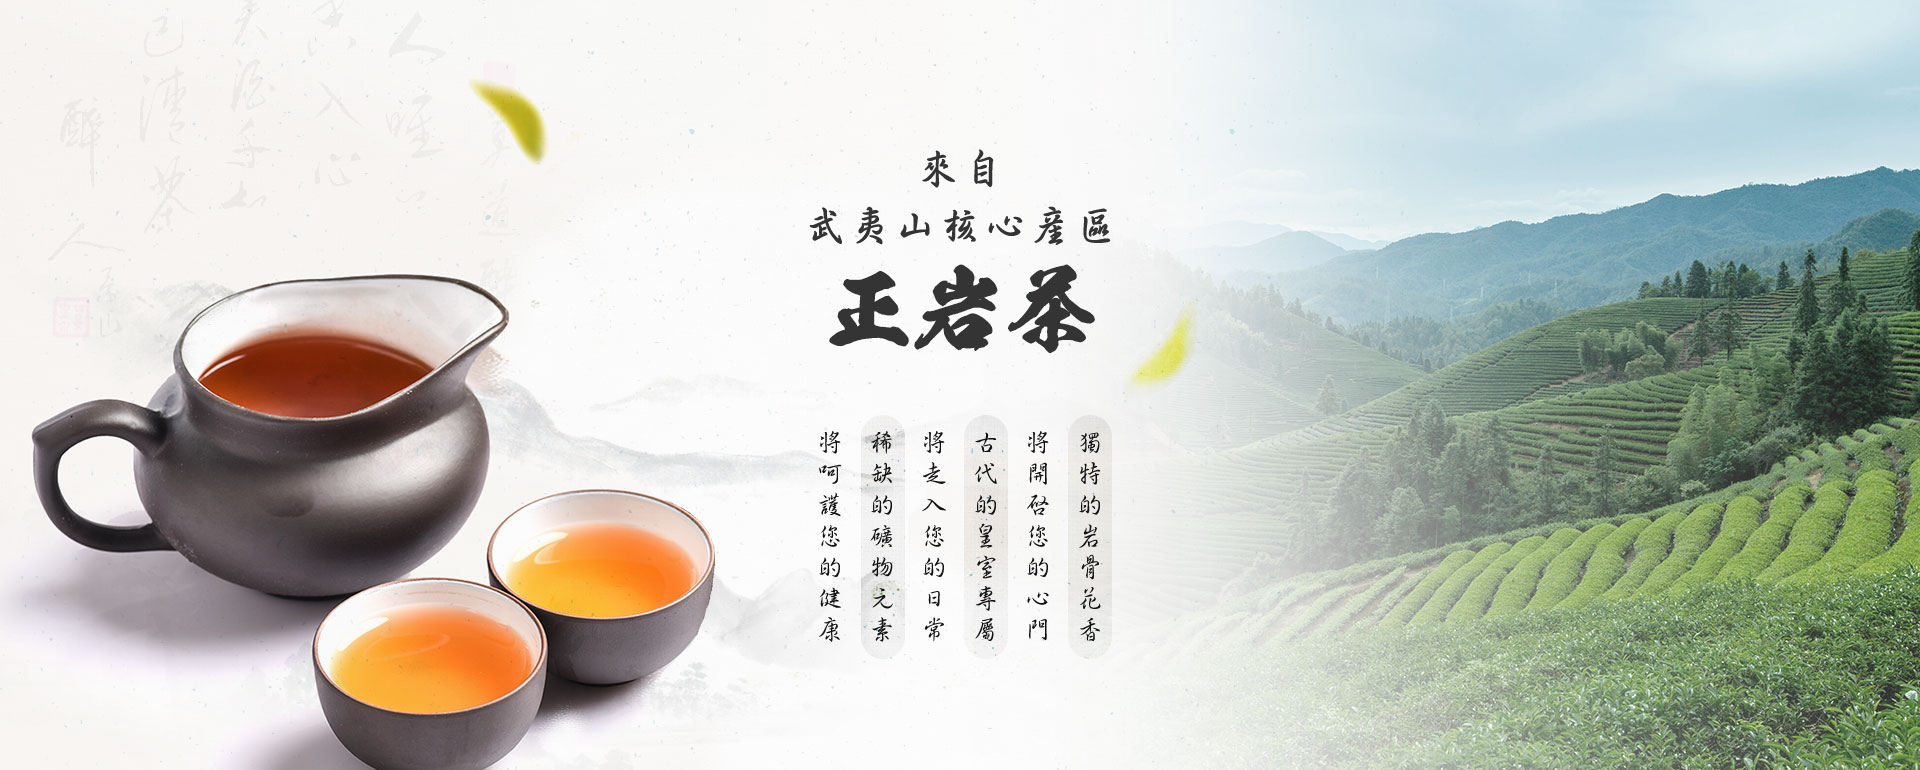 武夷岩茶、正岩茶大紅袍-客製化高級茶禮盒優惠推薦